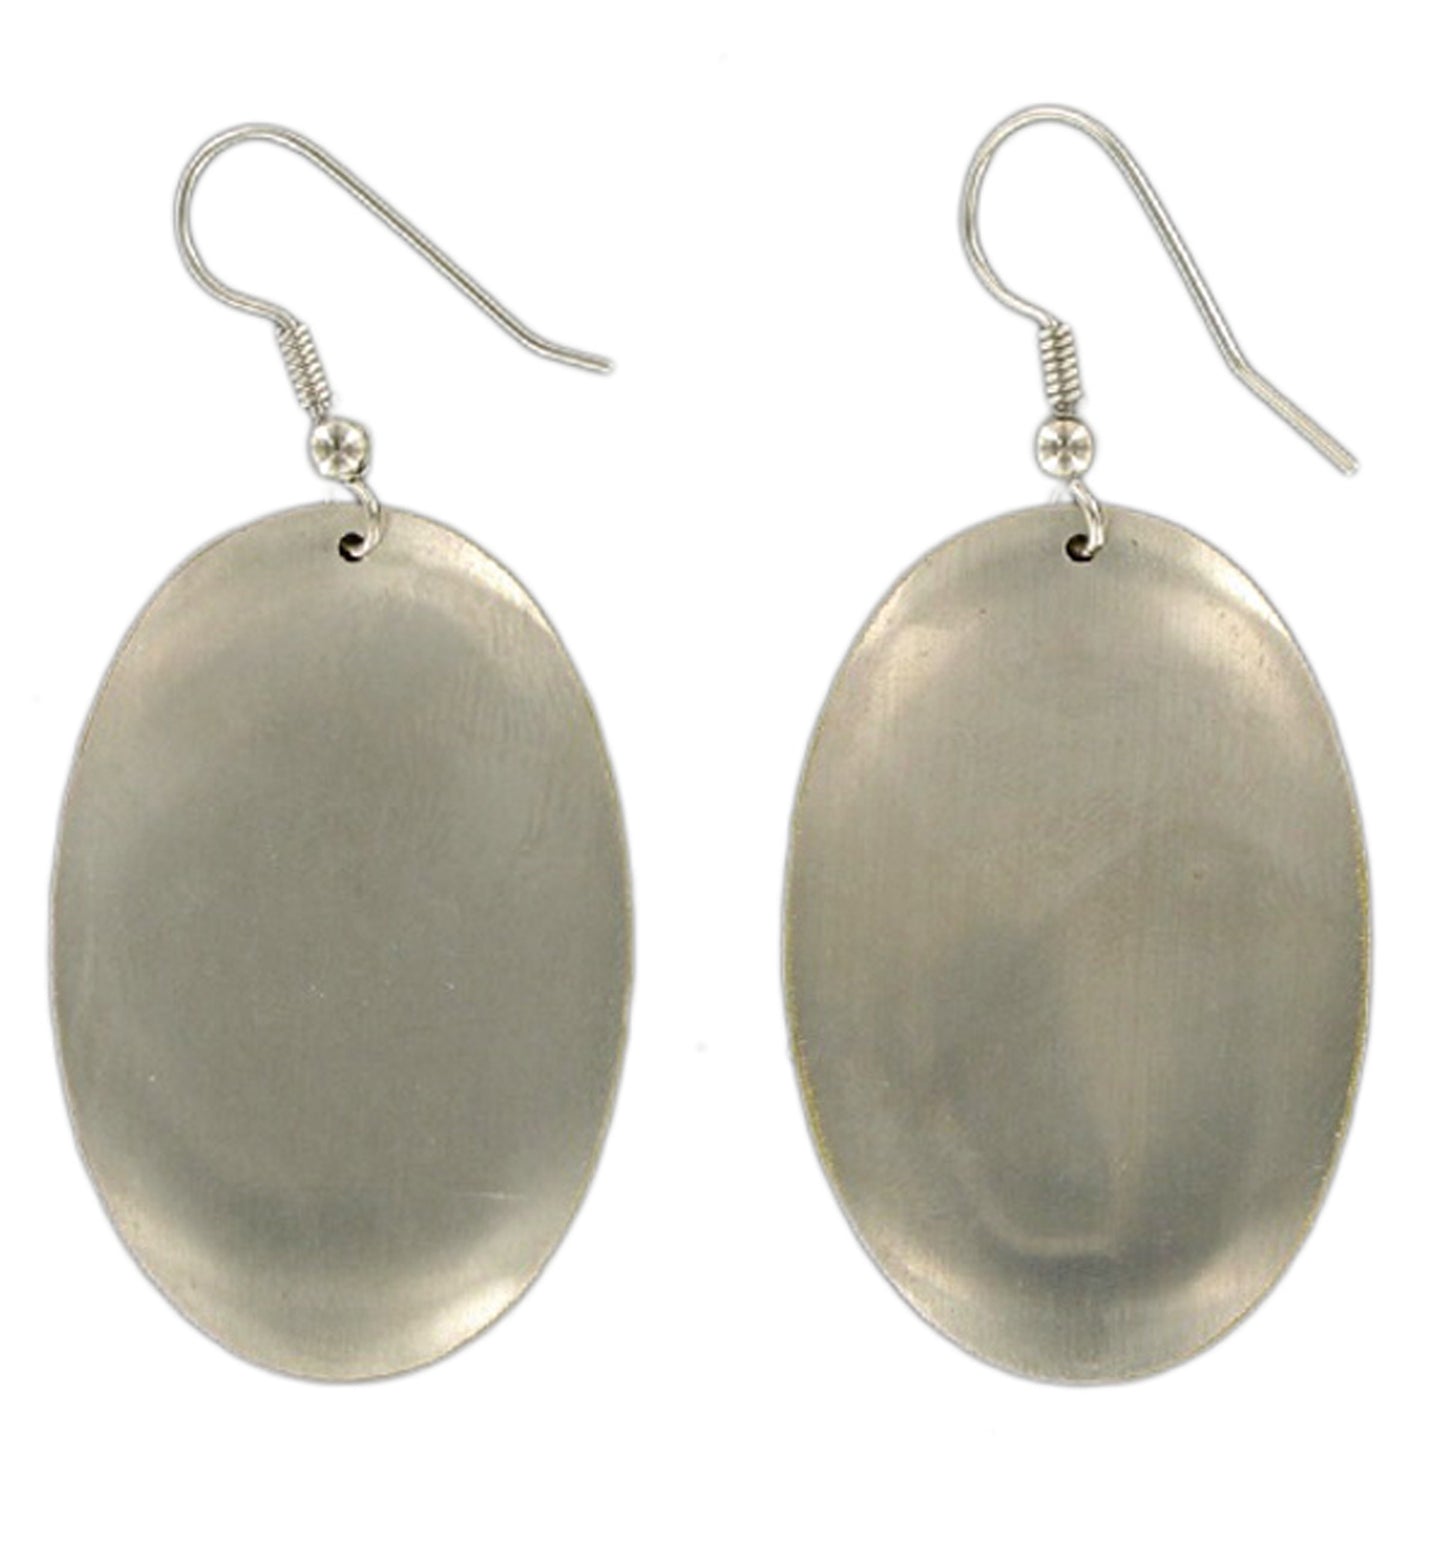 Oval Silver Copper Tone Dangle Pierced Earrings 1.5"